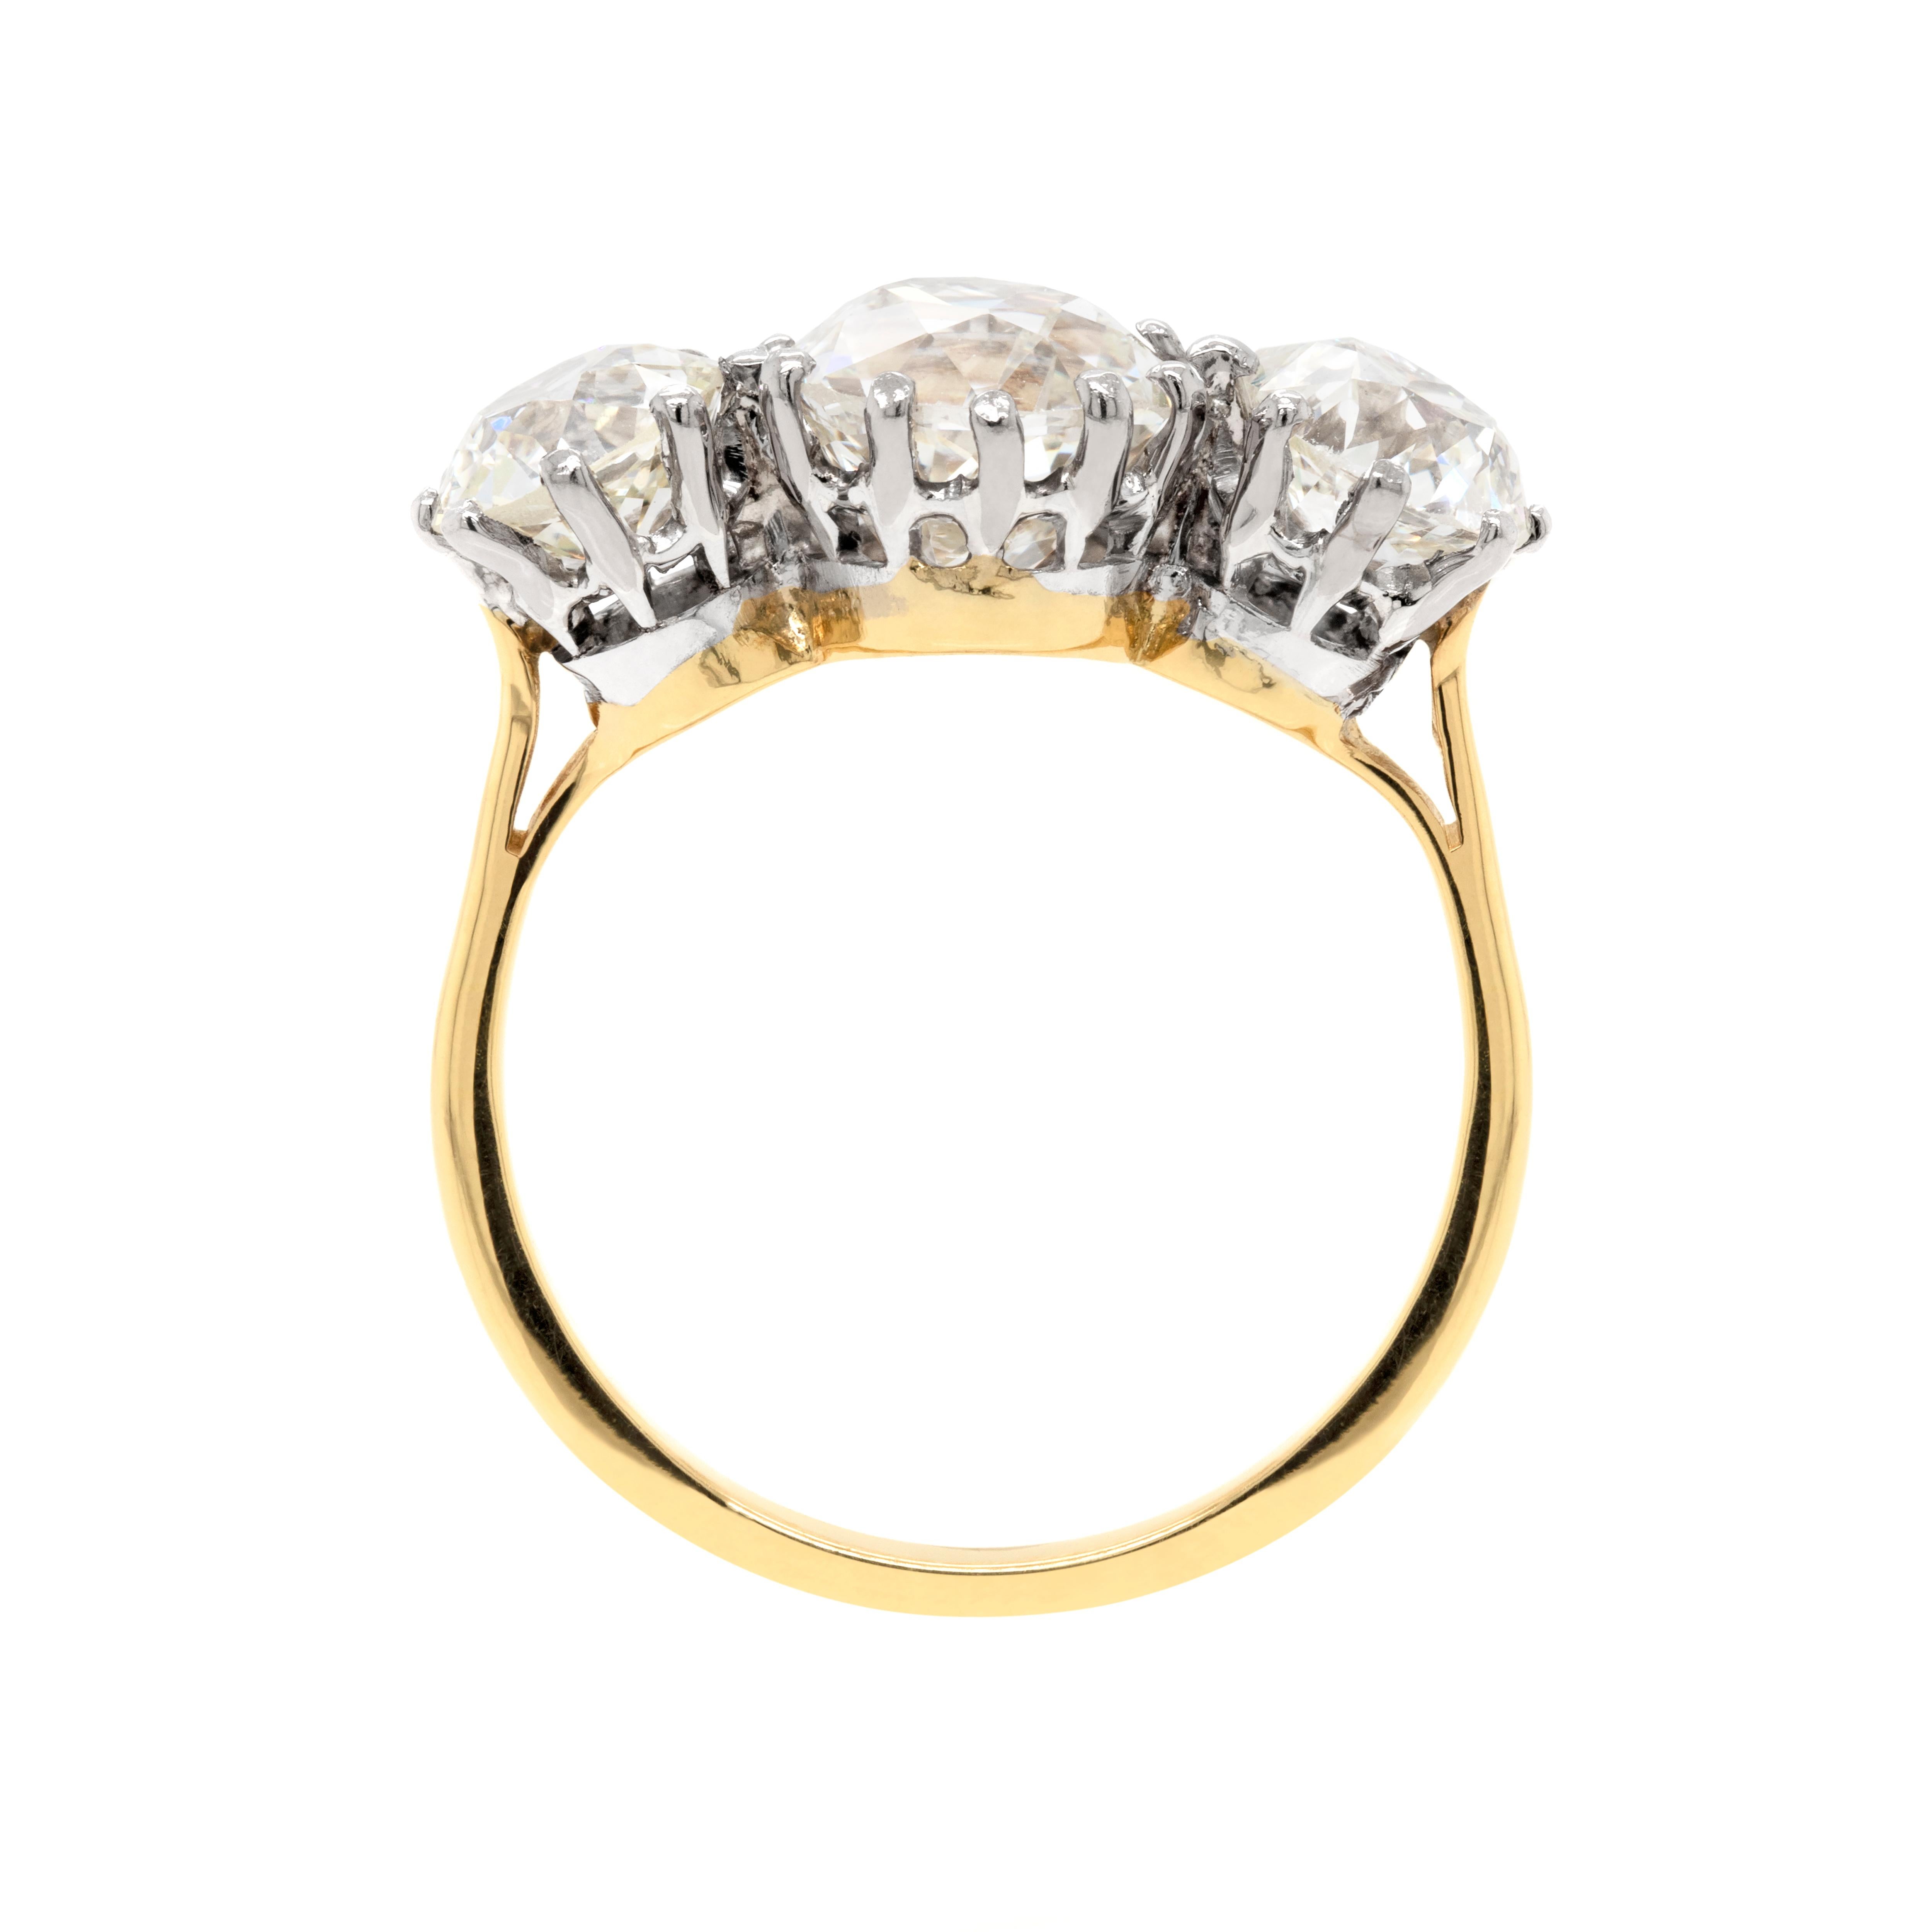 Dieser exquisite Verlobungsring mit drei Diamanten aus den 1920er Jahren ist zeitlos. In der Mitte des Rings befindet sich ein wunderschöner kissenförmiger Old Mine Cut-Diamant mit einem Gewicht von 2,50 ct, der in einer offenen 12-Krallen-Fassung